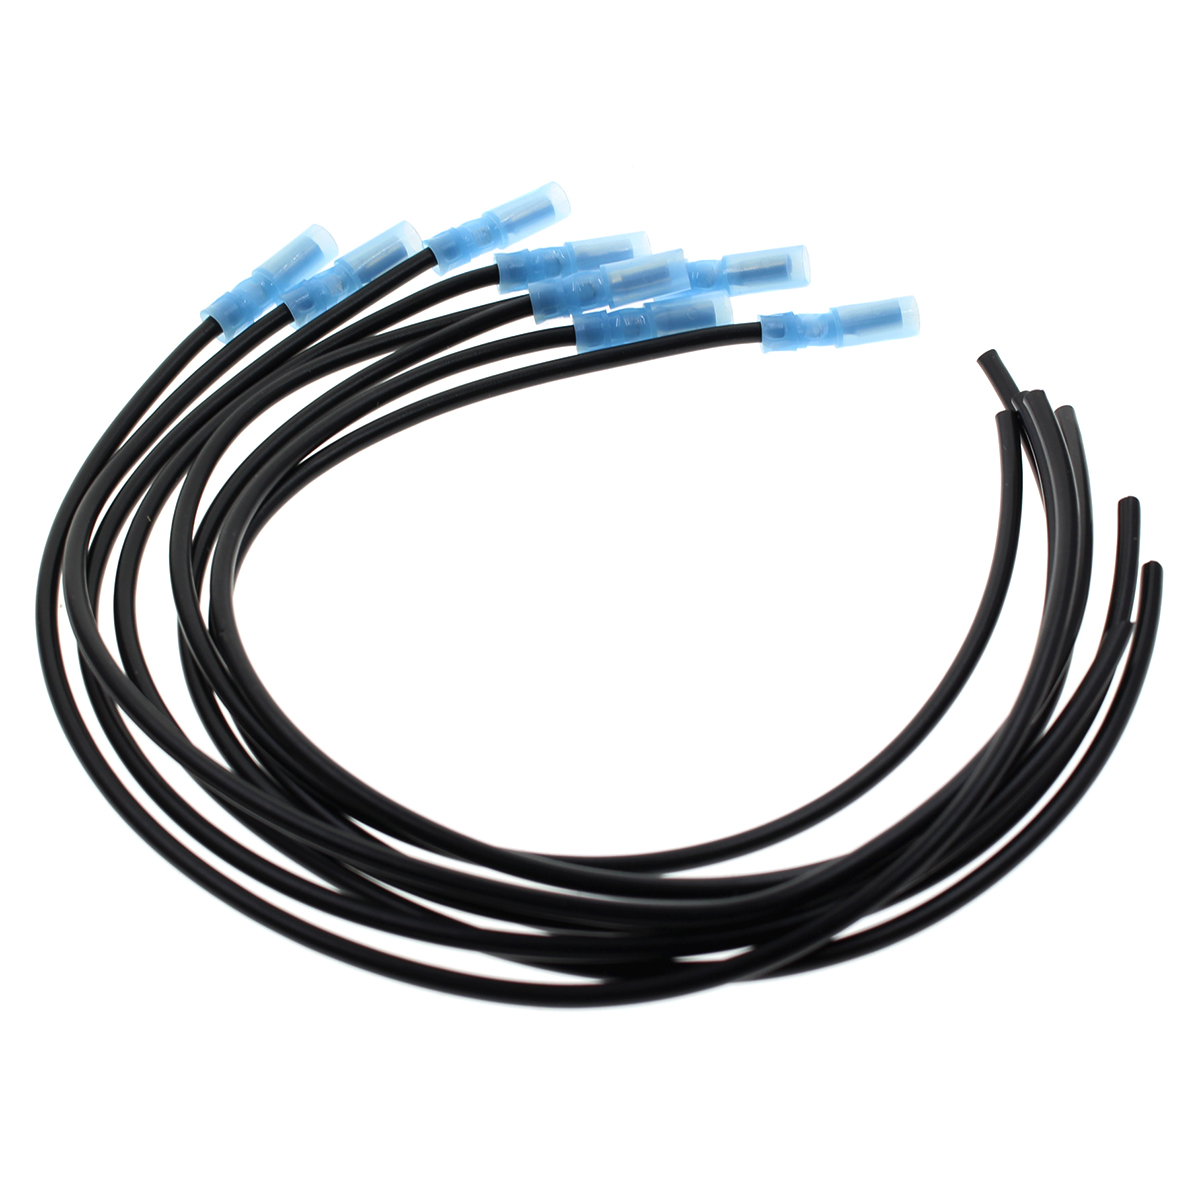 8 Pcs Glow Plug Harness Repair Kit For Ford F-250 F-350 F59 8894-7.3-6.